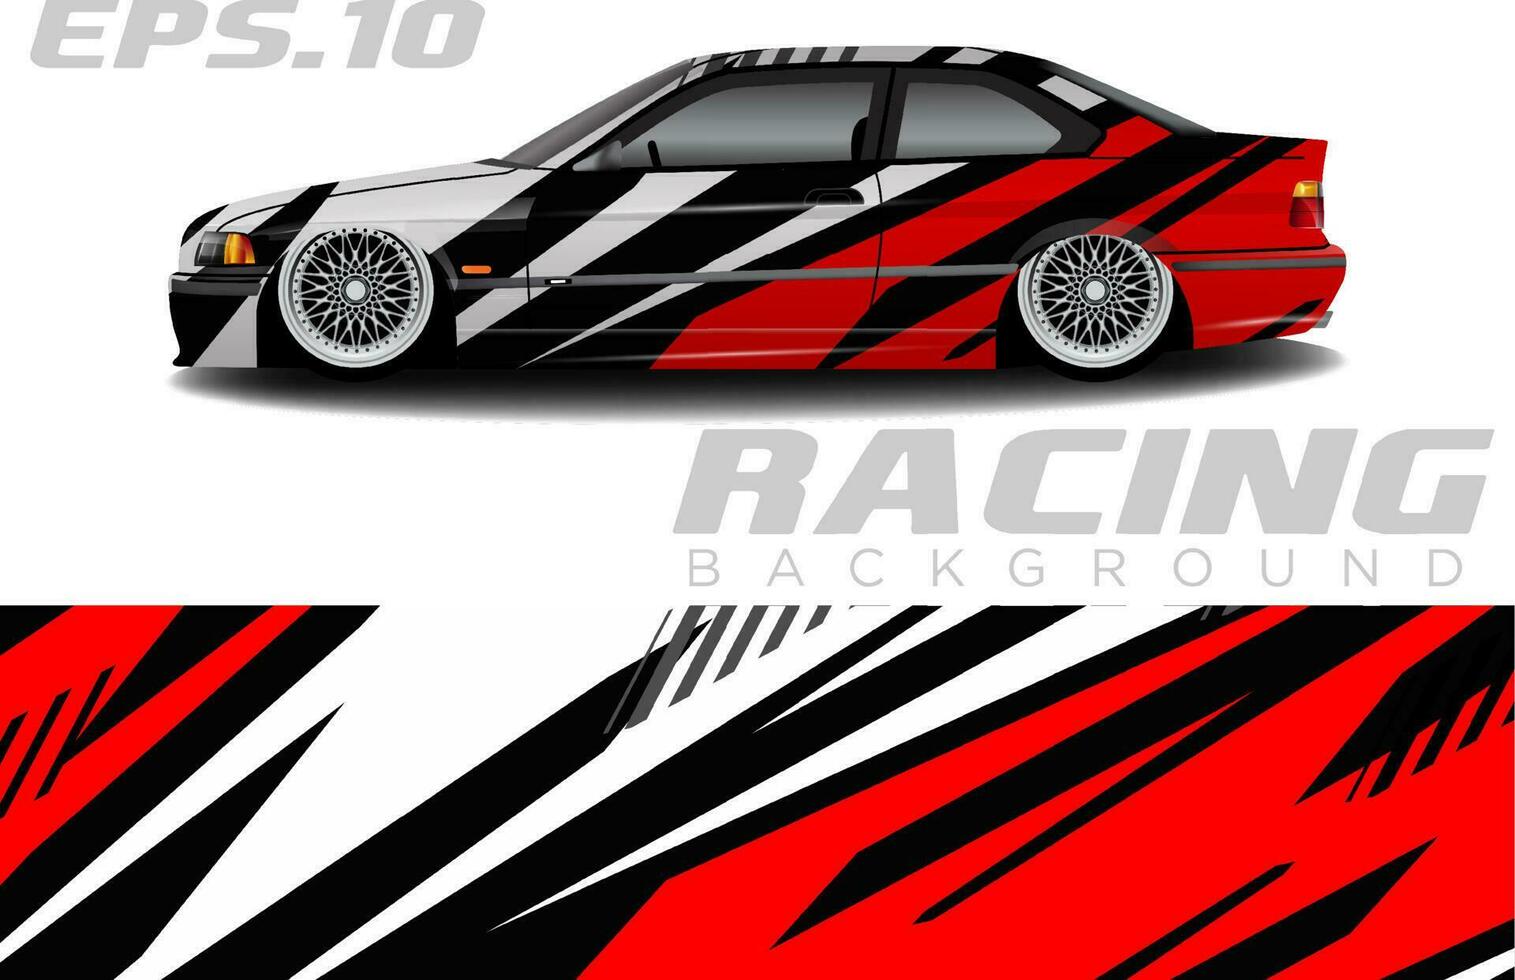 Rallye-Rennwagen-Wrap-Design-Vektor für Fahrzeug-Vinyl-Aufkleber und Automobil-Aufkleber-Lackierung vektor